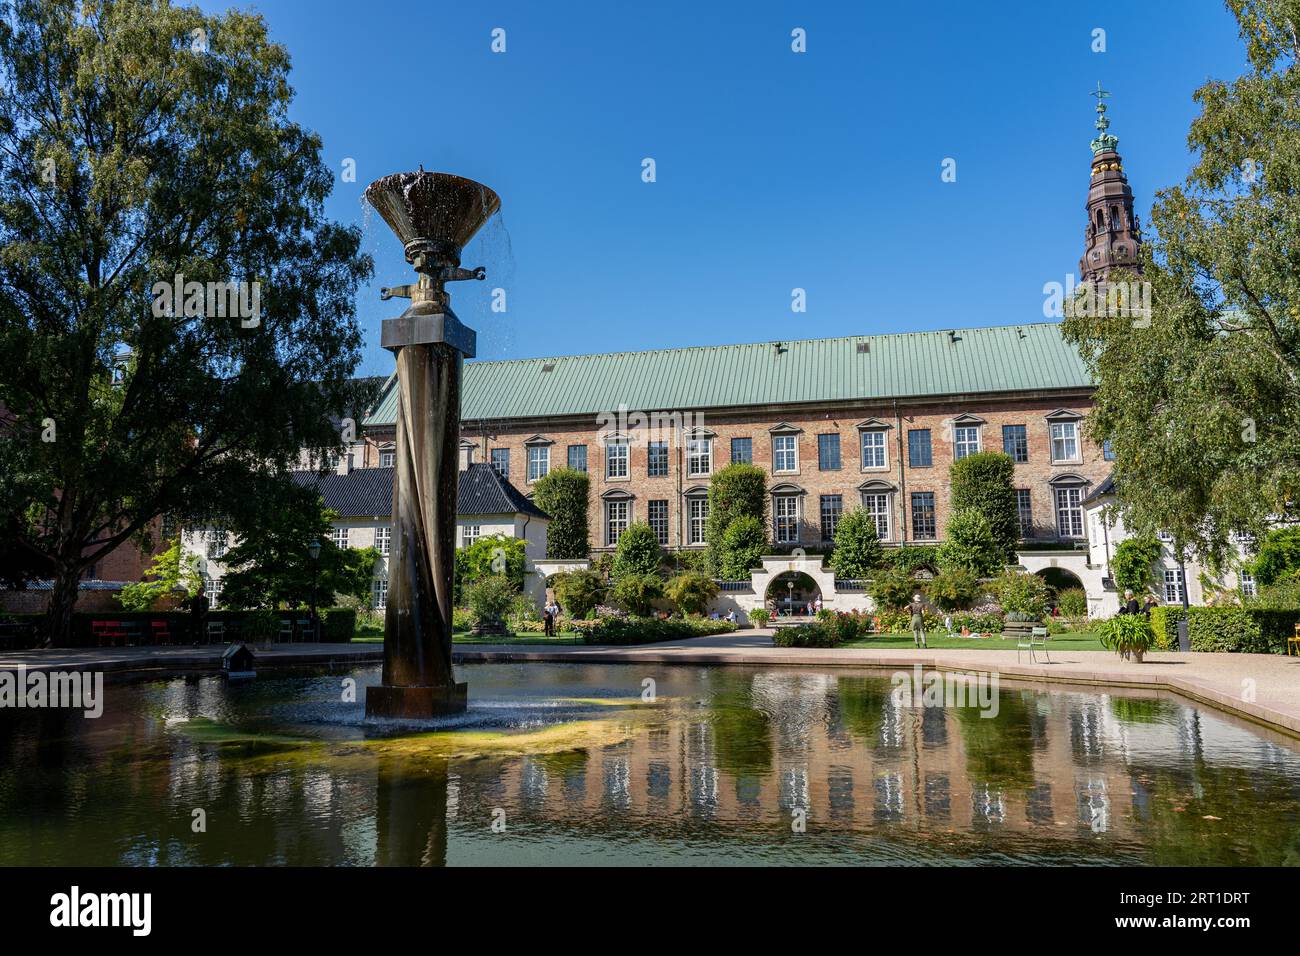 Copenhagen, Denmark -September 2, 2021: The Royal Library Garden on a sunny day Stock Photo